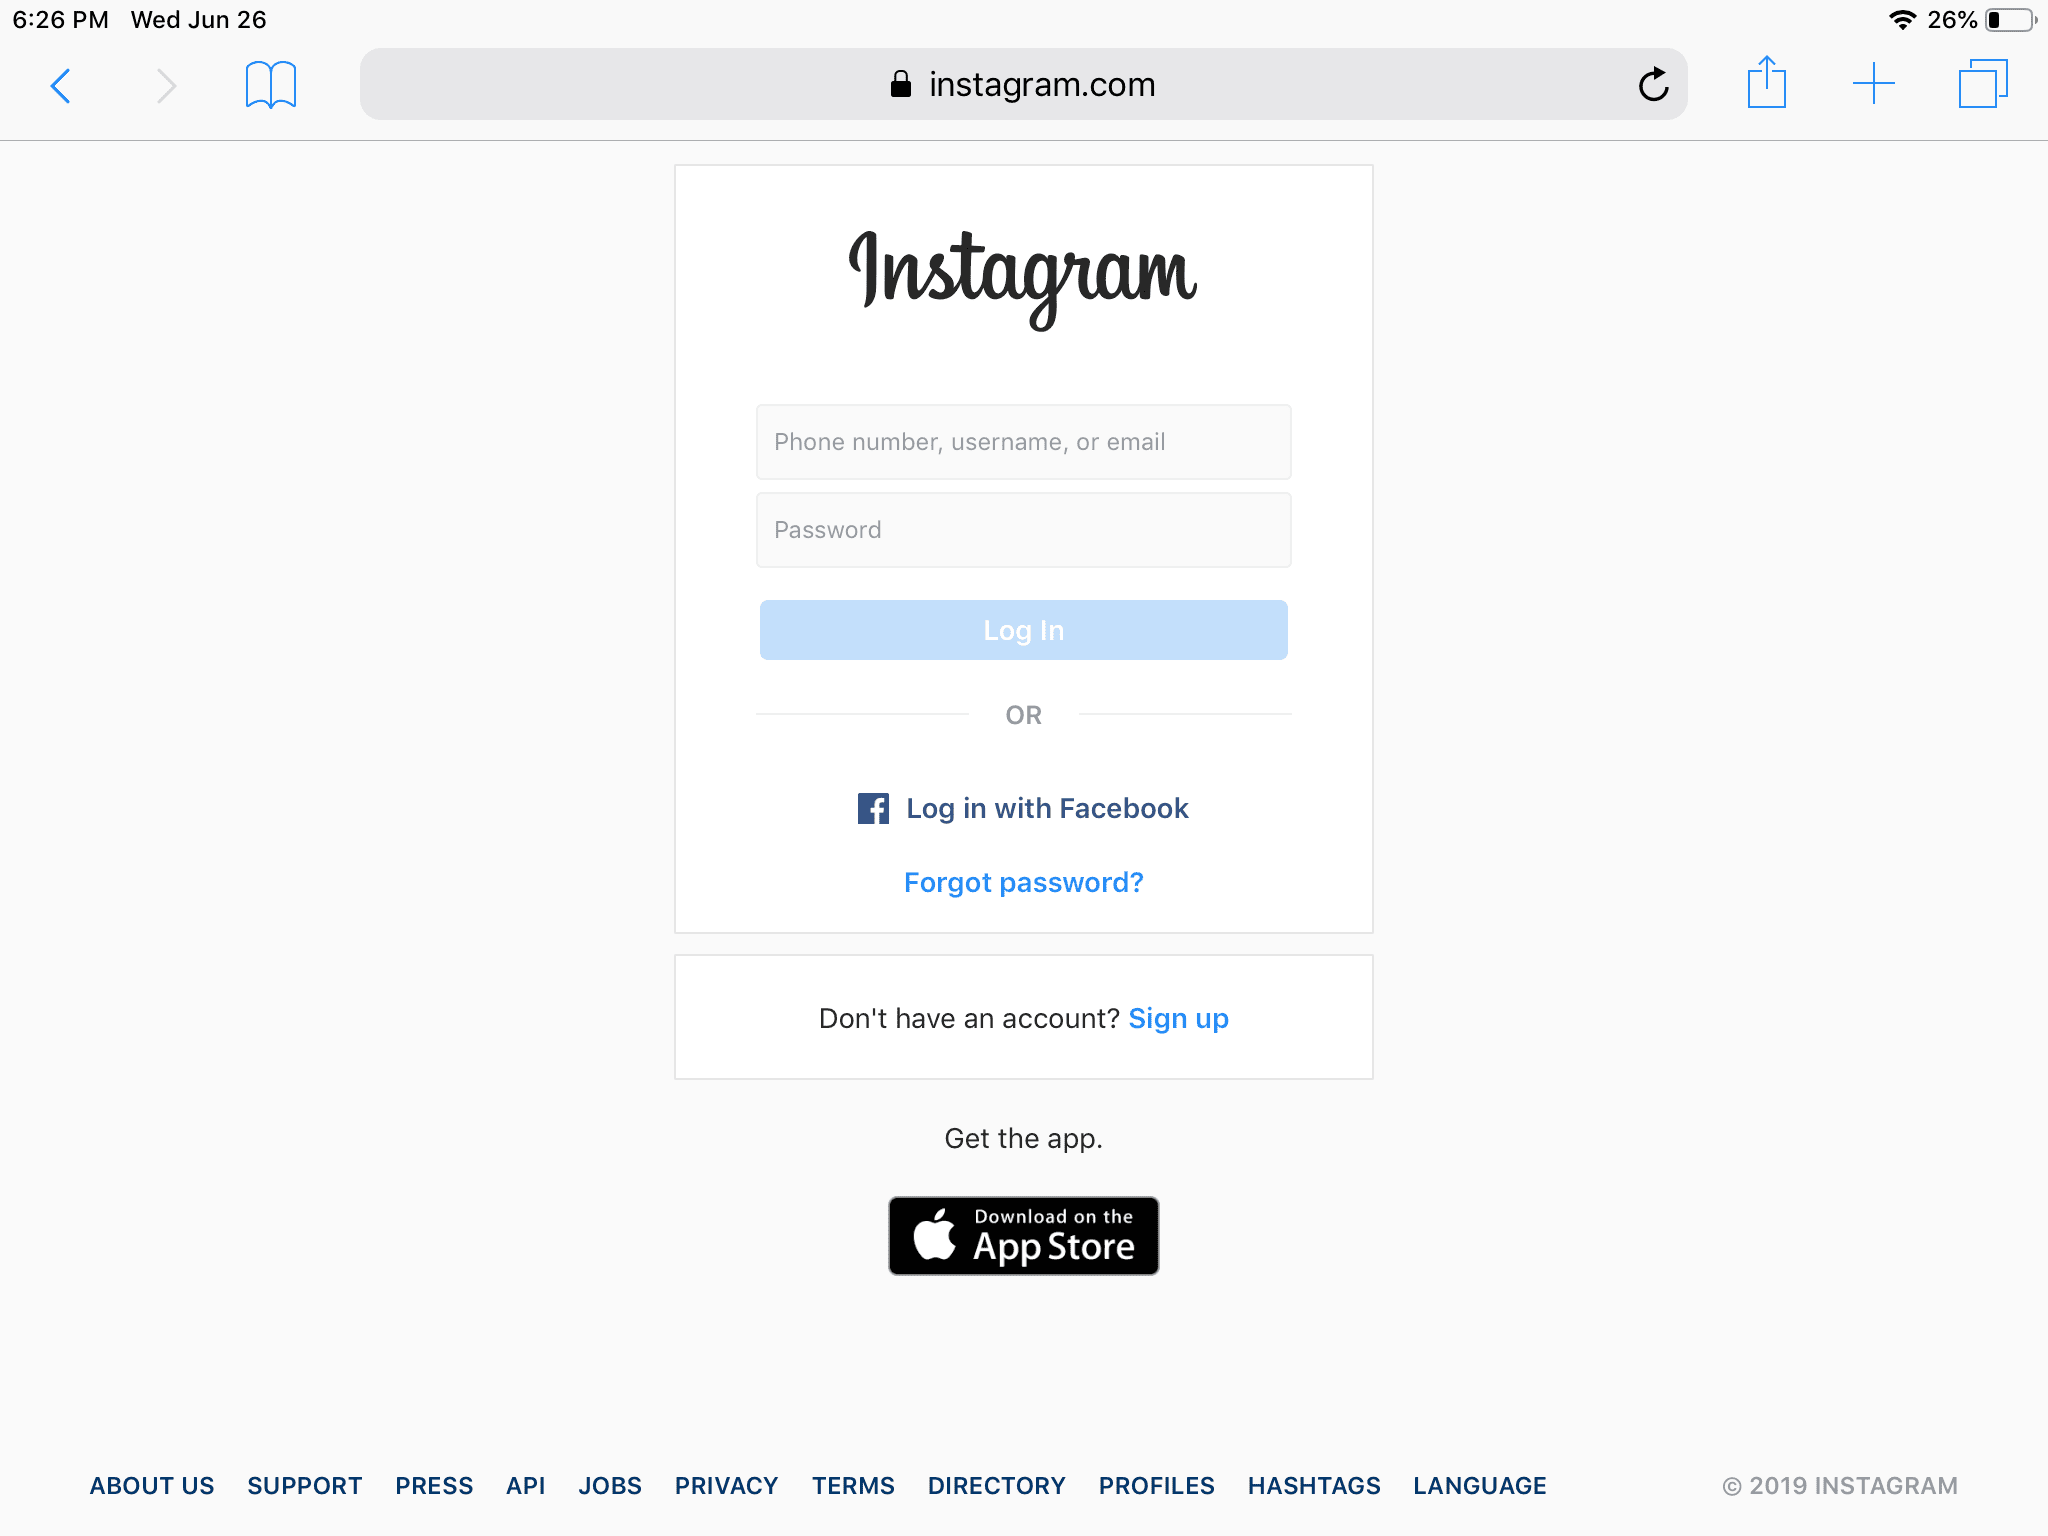 снимок экрана входа в систему instagram.com в Safari для iPad